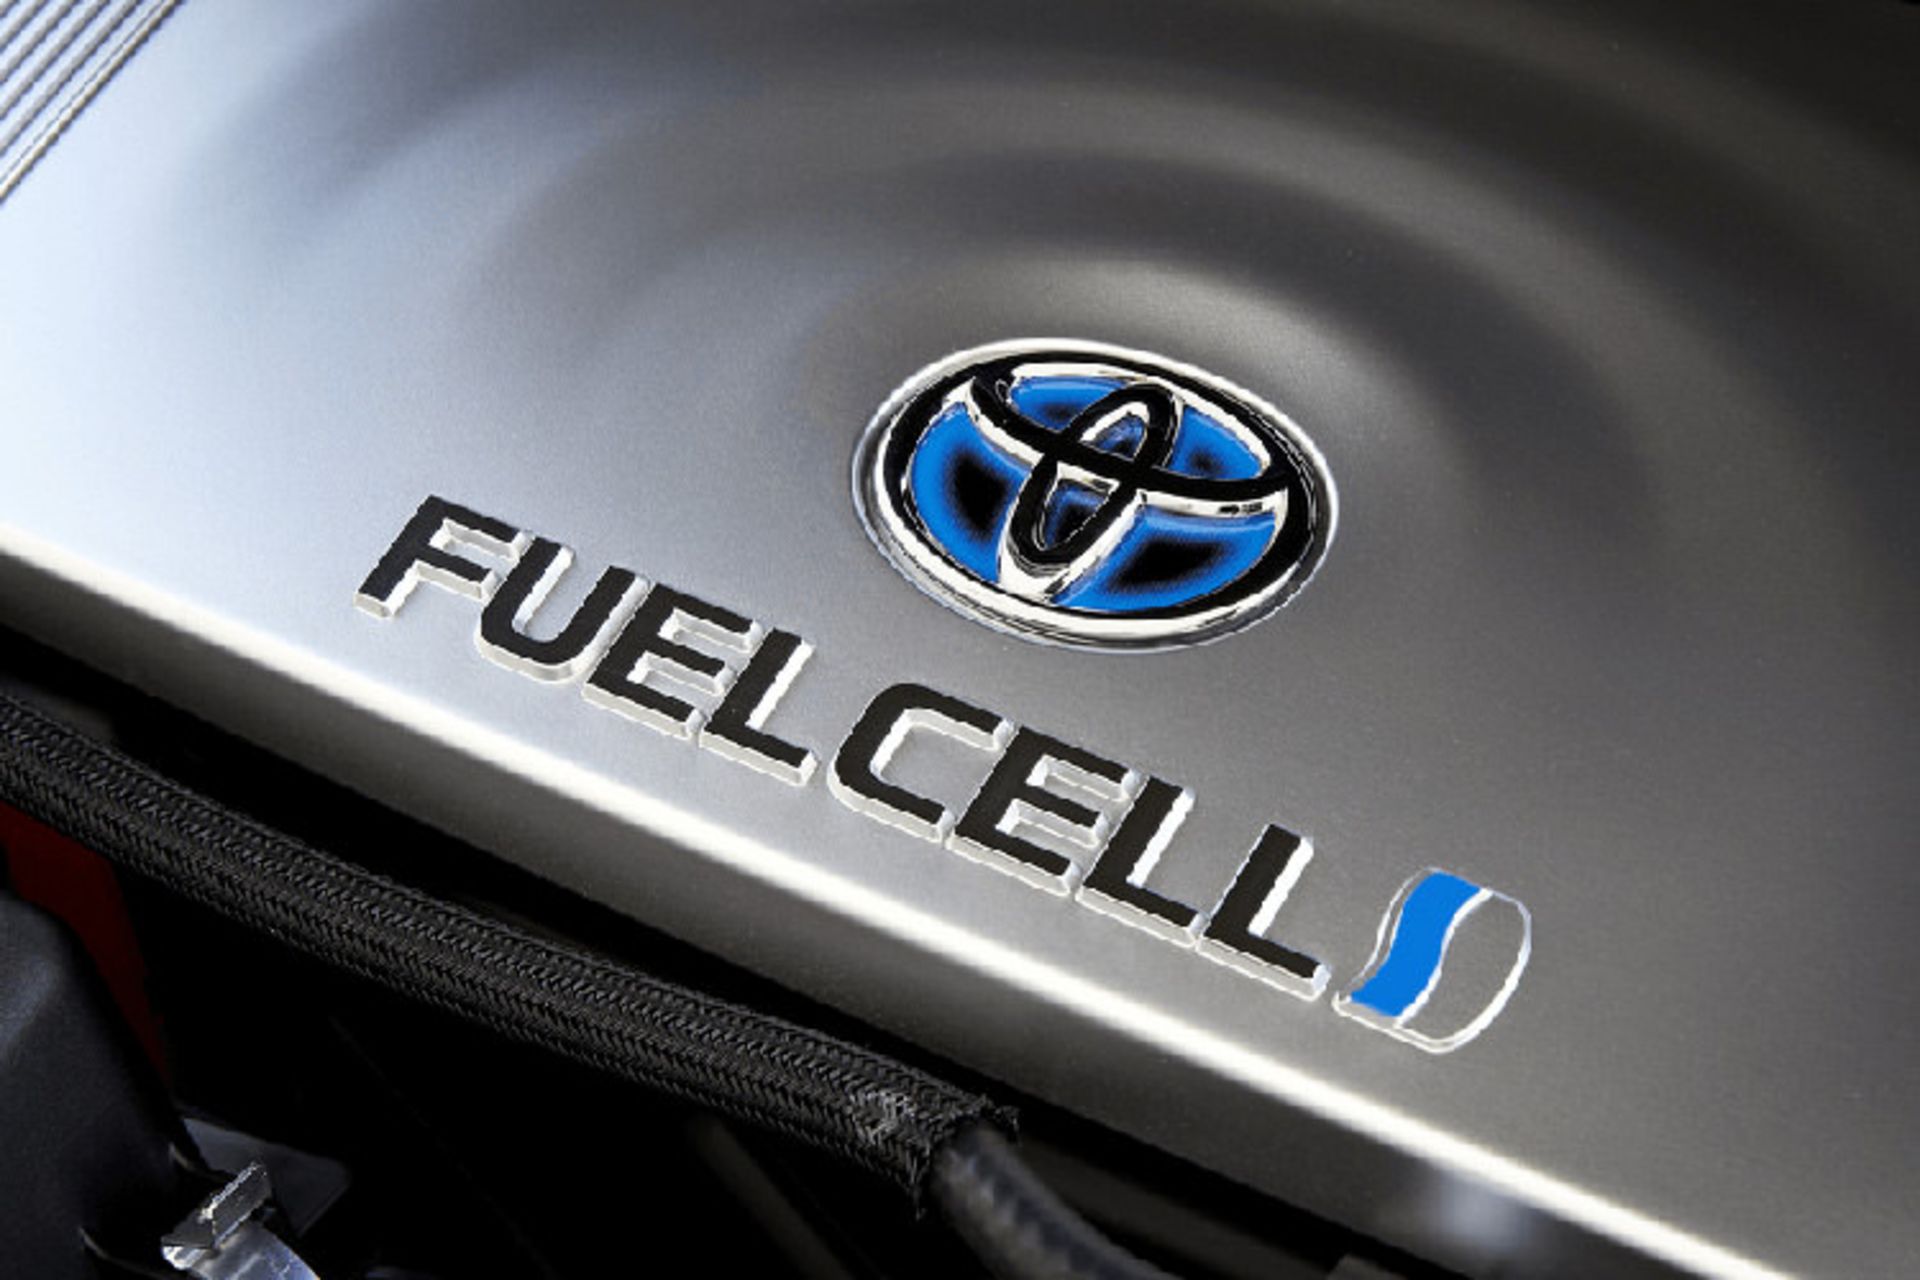 مرجع متخصصين ايران Toyota hydrogen fuel cell vehicle / خودروي هيدروژني پيل سوختي تويوتا